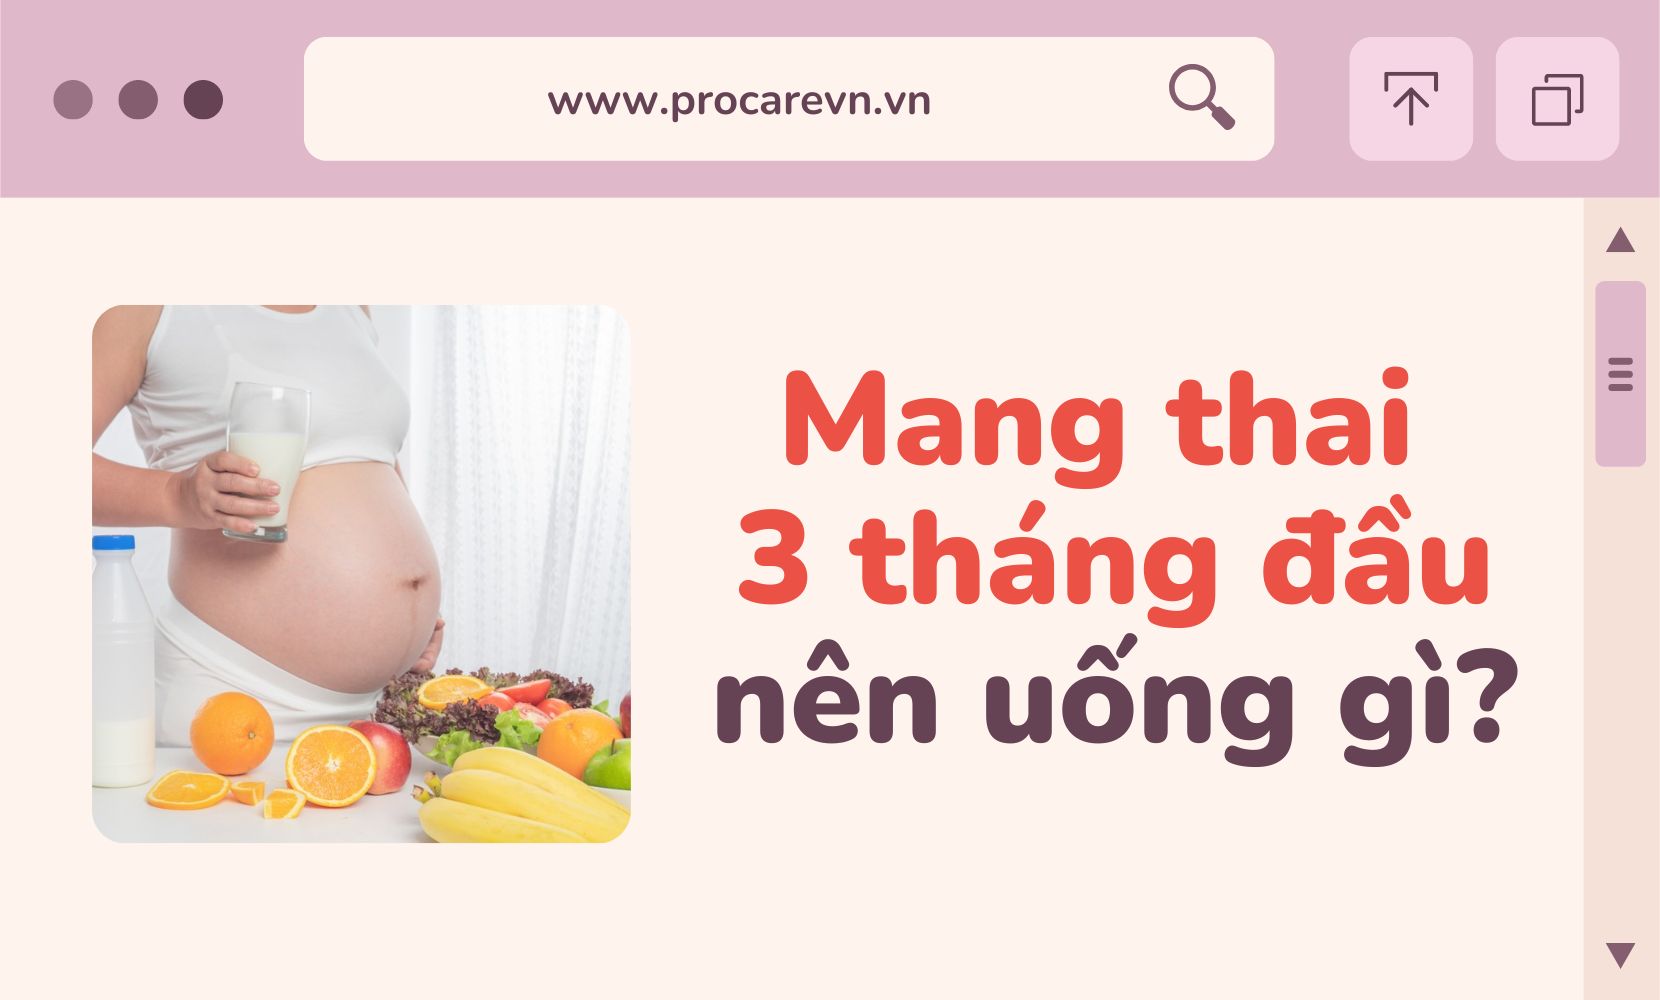 Gợi ý mẹ bầu nên ăn uống gì trong 3 tháng đầu Đảm bảo sức khỏe cho mẹ và thai nhi